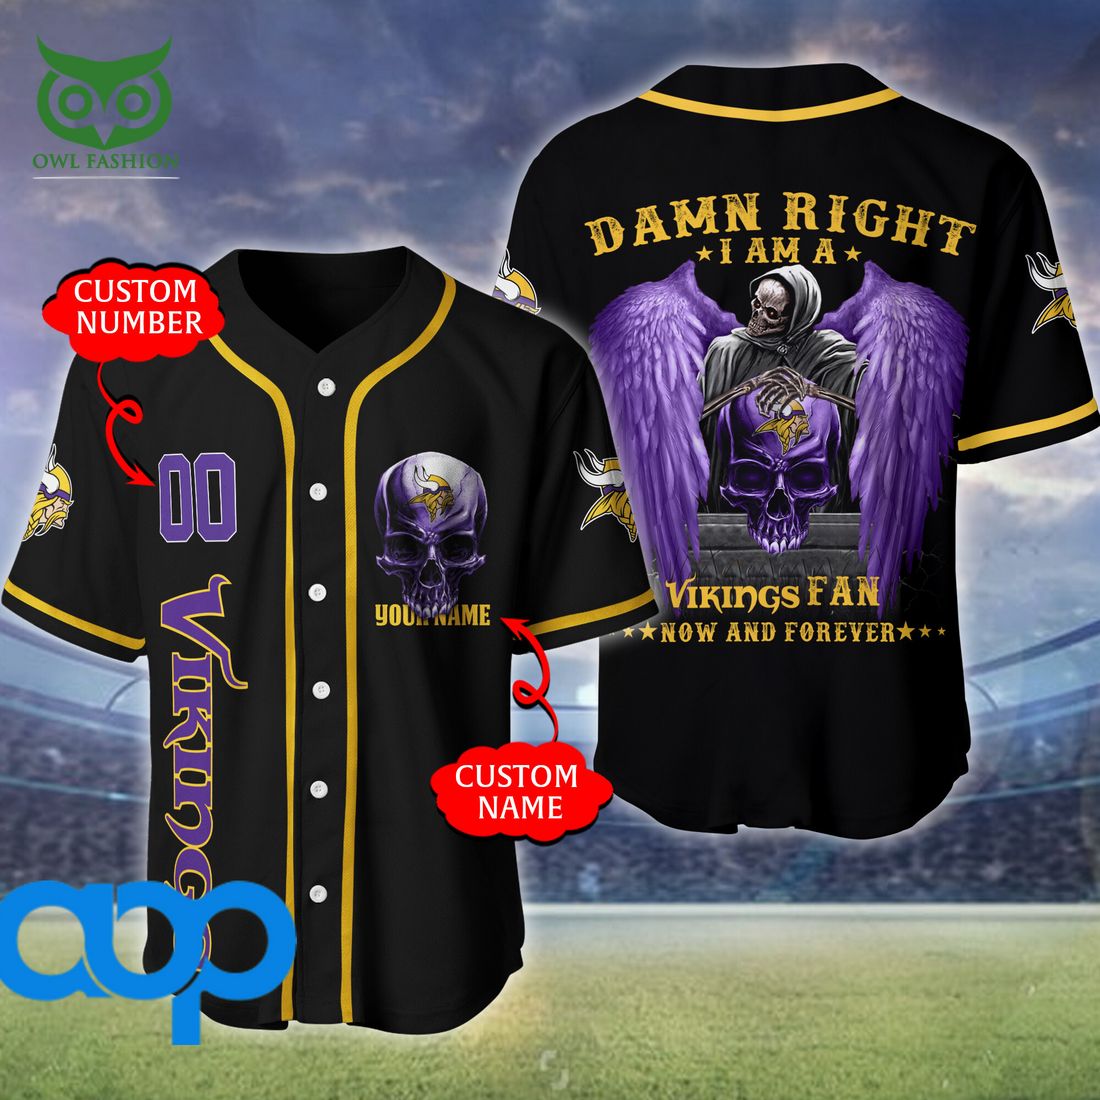 Minnesota Vikings Custom Number And Name NFL 3D Baseball Jersey Shirt Skull  For Fans Gift Halloween - Freedomdesign